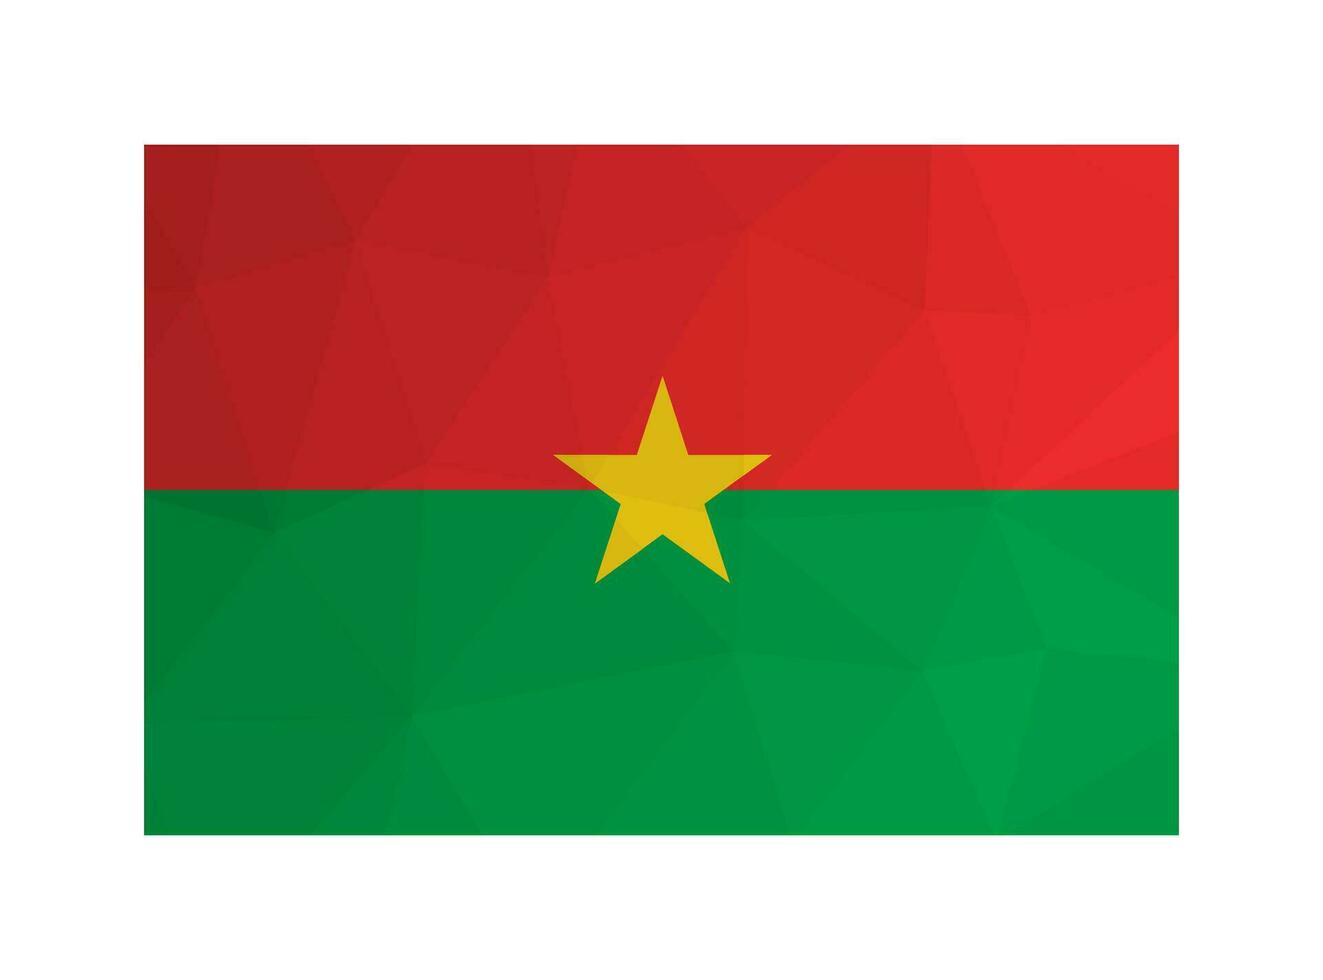 Vektor isoliert Illustration. offiziell Symbol von Burkina faso. National Flagge mit Bands von rot und Grün und Gelb Stern. kreativ Design im niedrig poly Stil mit dreieckig Formen. Gradient Wirkung.